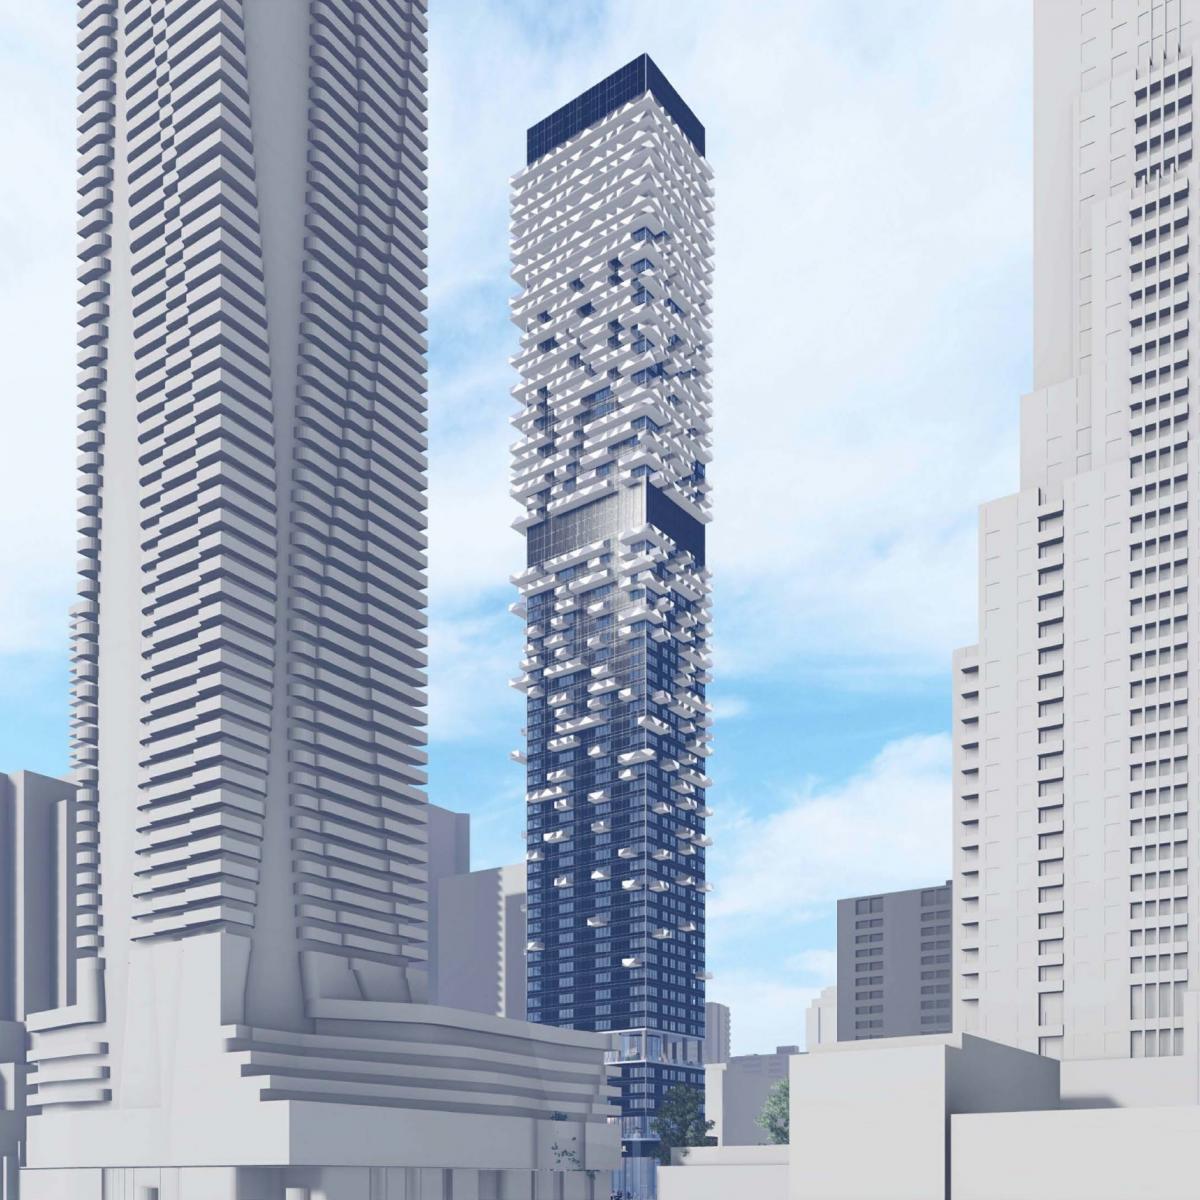 Concord Adex Proposes 64-Storey Skyscraper Near Yonge and 